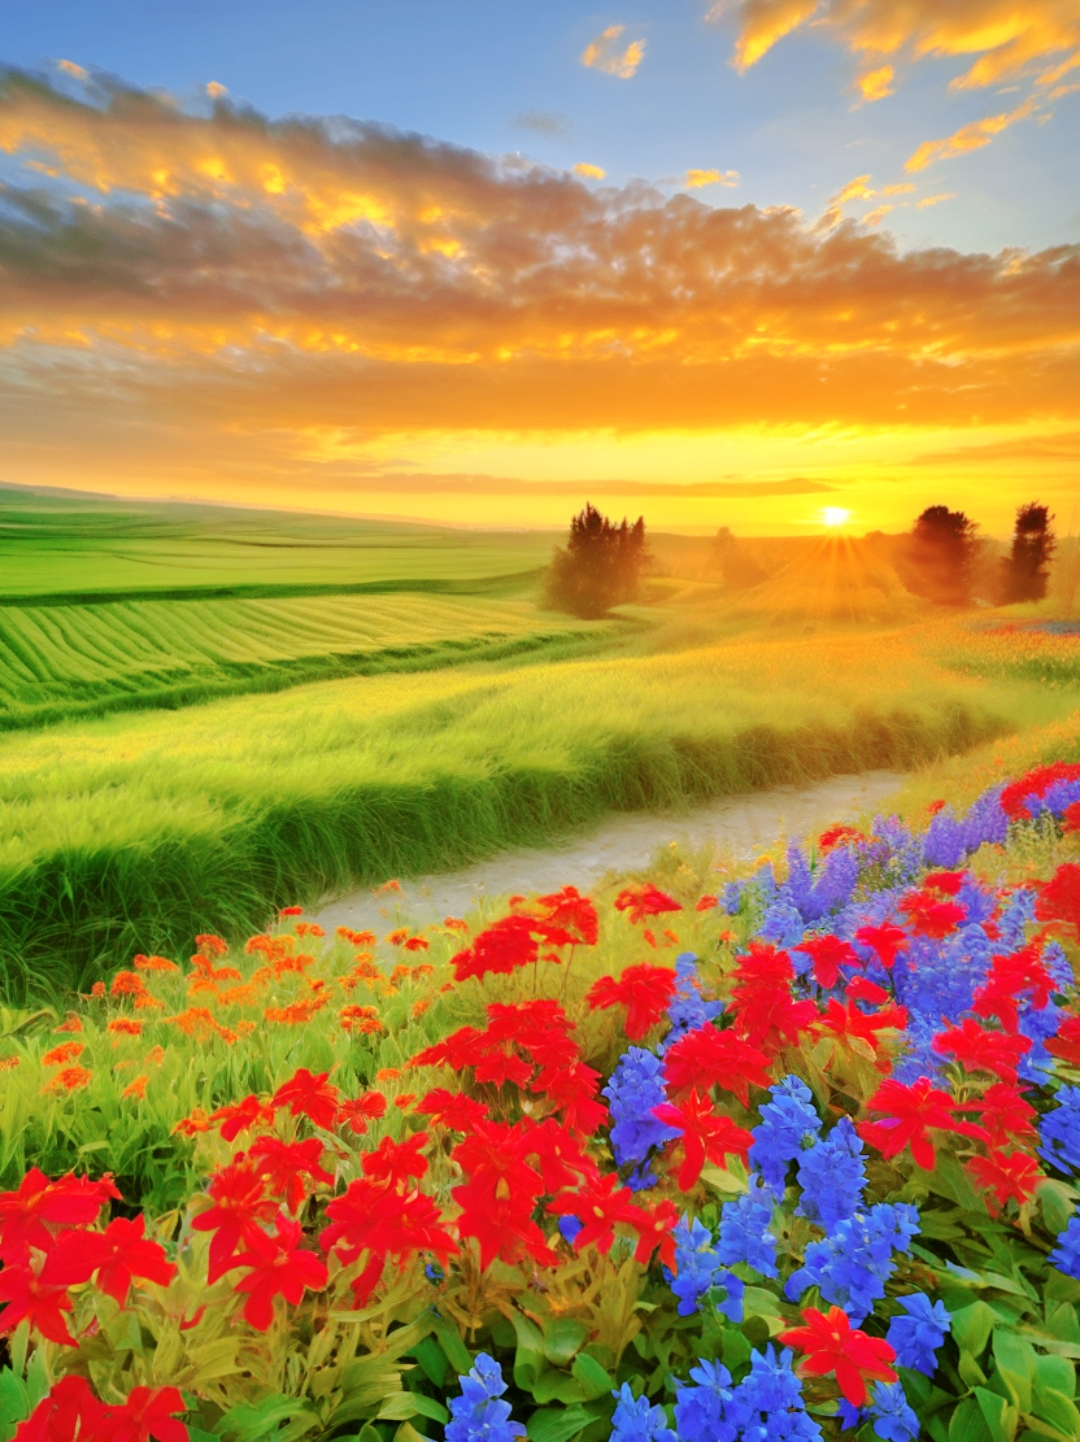 麦田的早晨,霞光与花朵的浪漫邂逅  在一片翠绿的麦田中,太阳升起